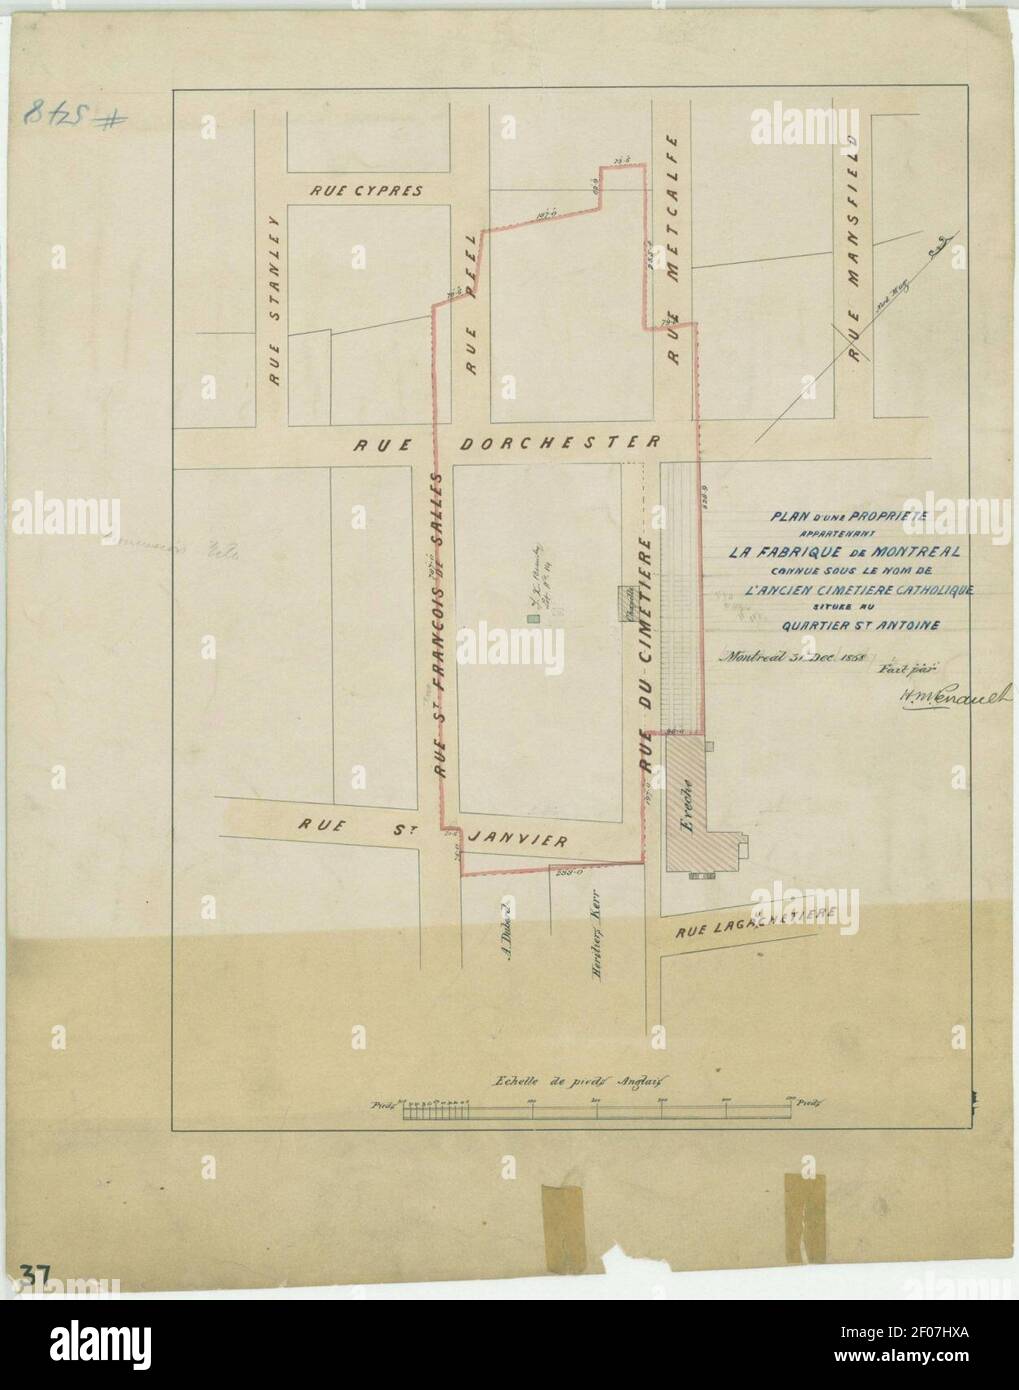 Plan d une propriete, appartenant a la Fabrique de Montreal, connue sous le nom de l ancien cimetiere catholique, situee au quartier St Antoine. Stock Photo